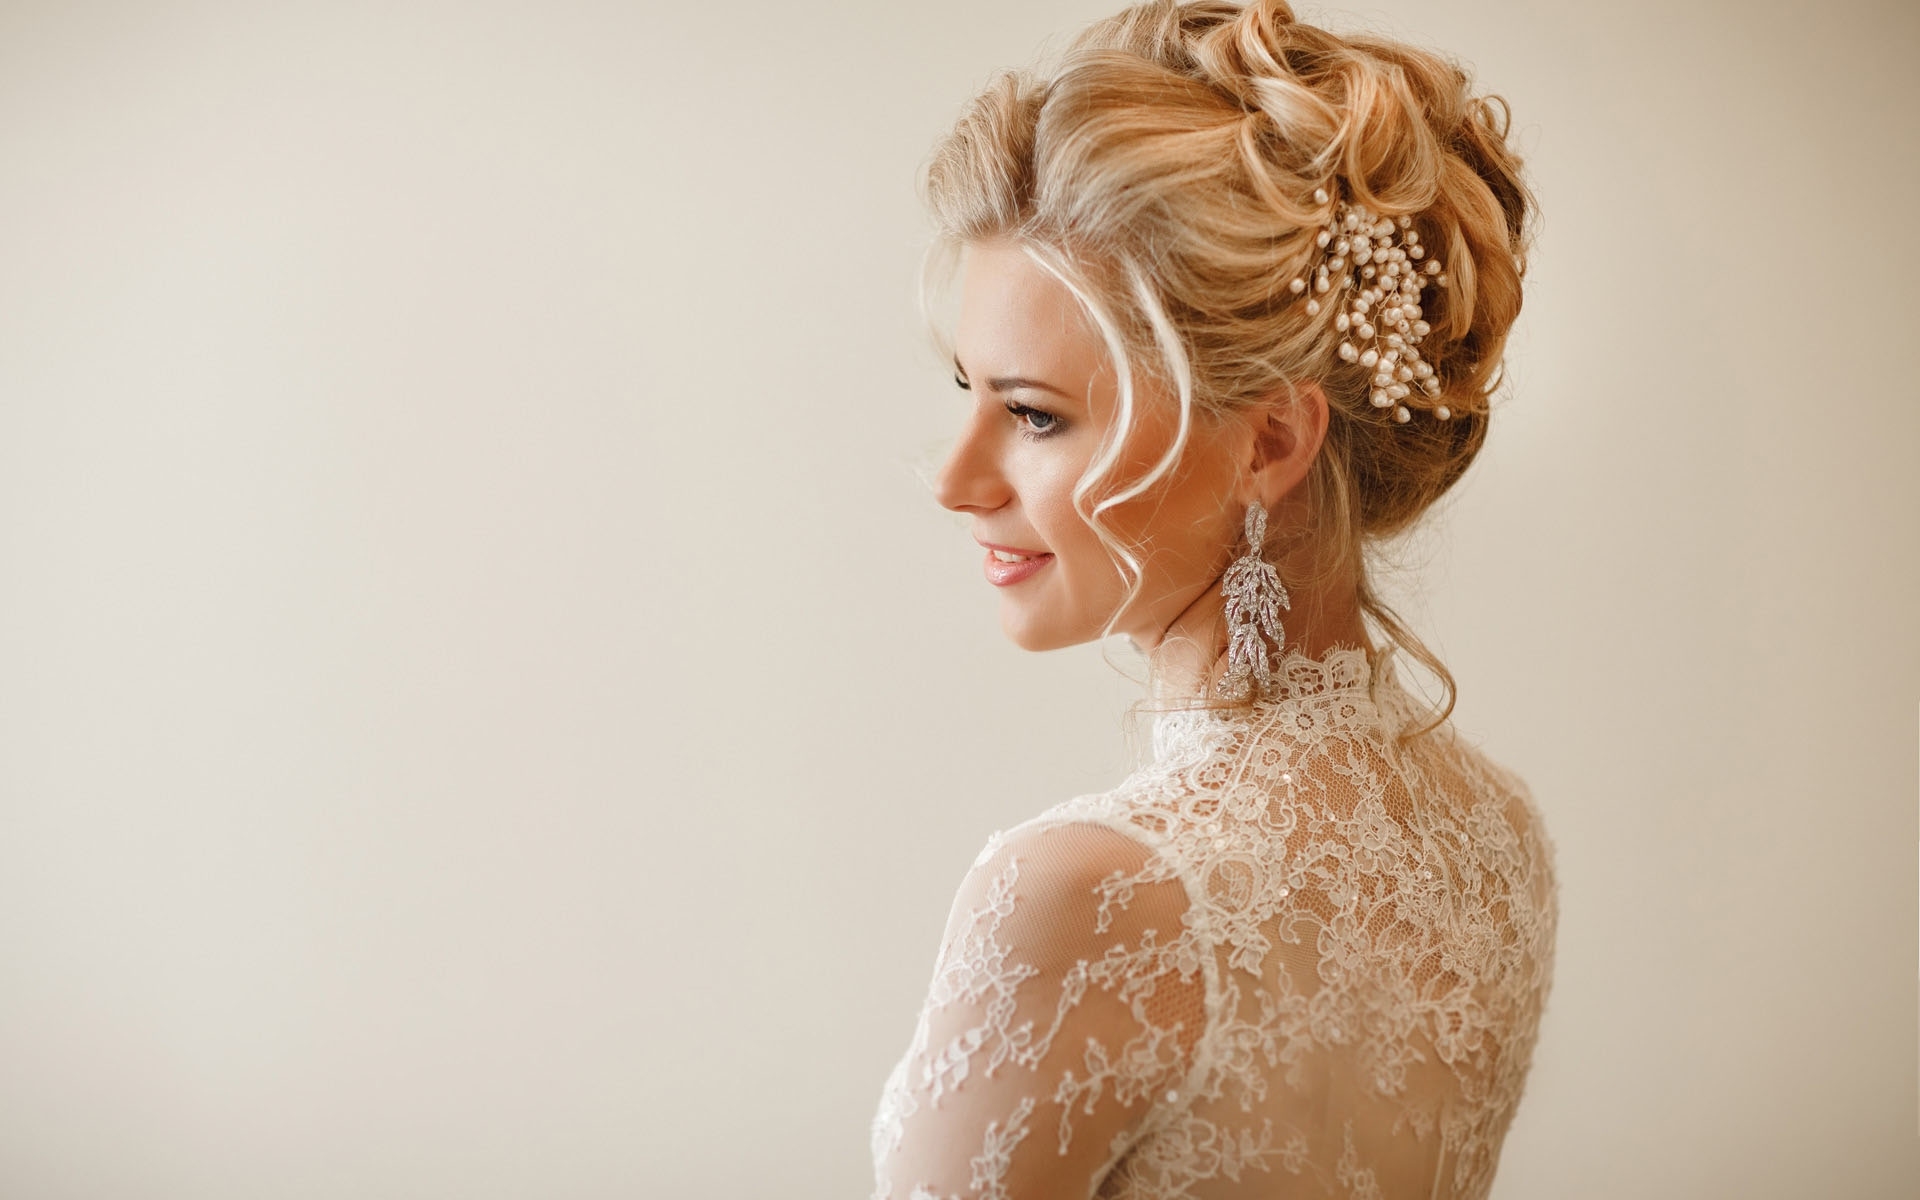 Wedding Hair Service Scotland | Wedding Makeup | The Bride To Be for Bridal Hair Courses Scotland